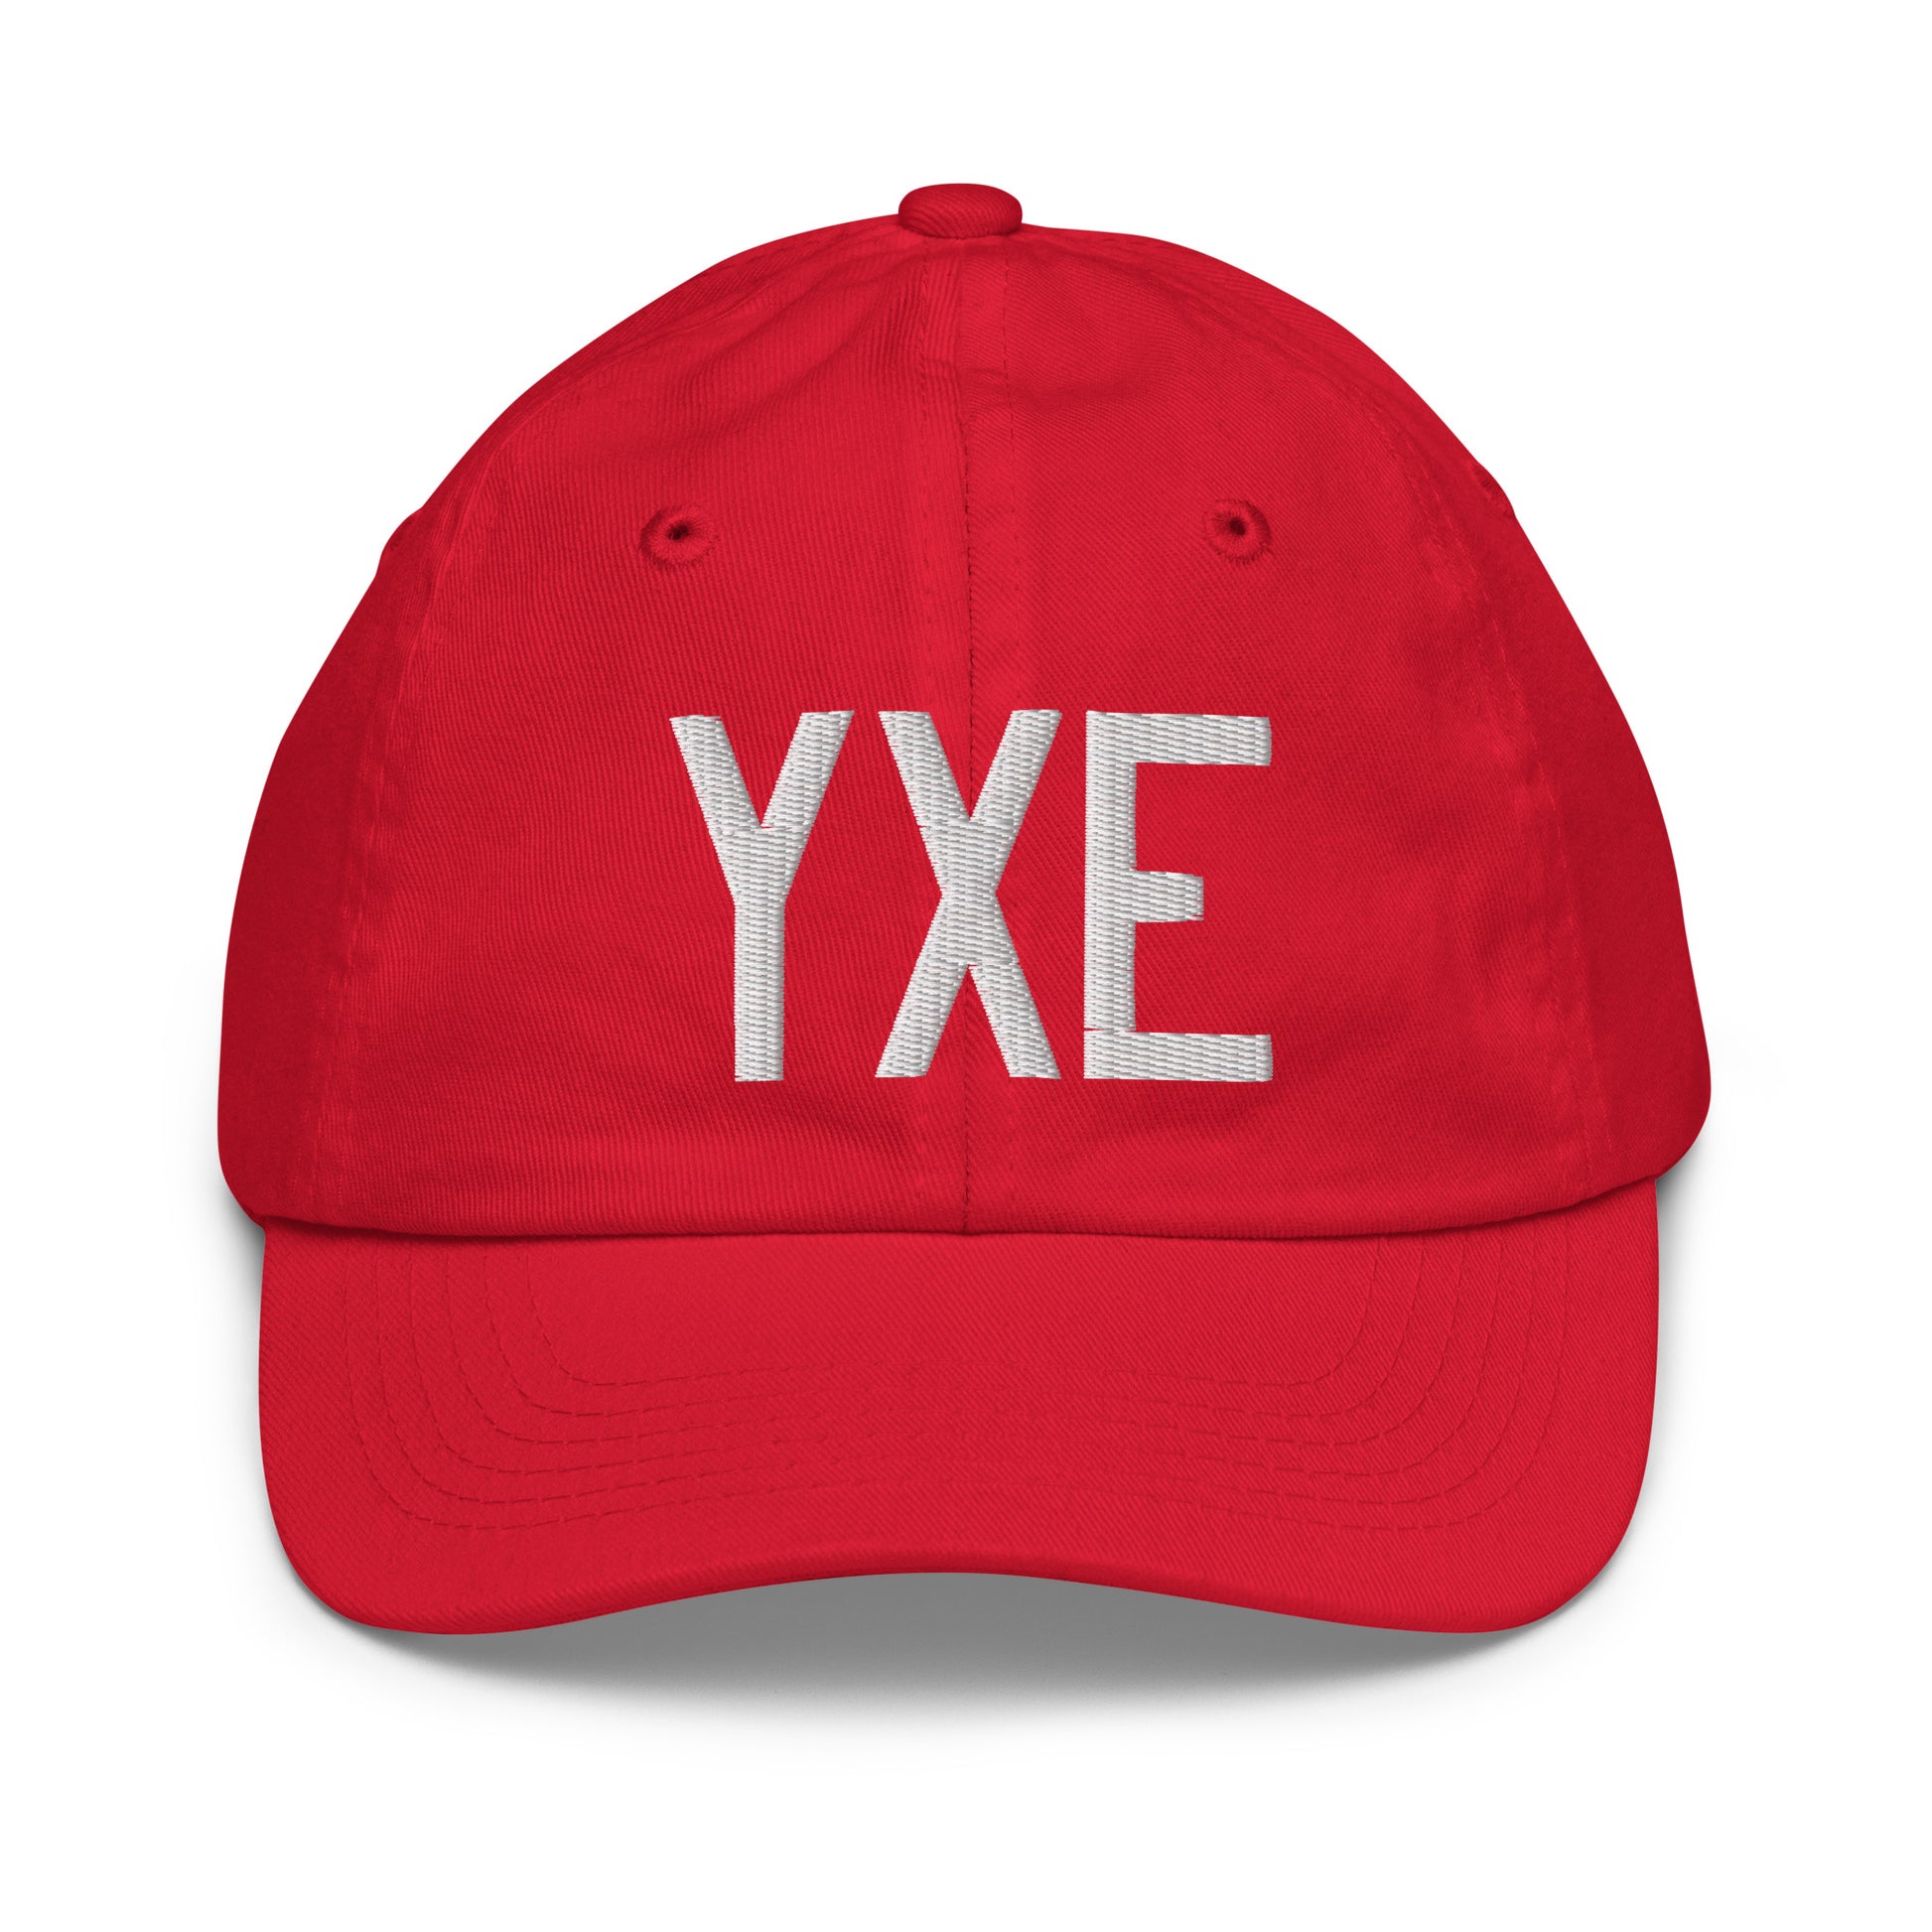 Airport Code Kid's Baseball Cap - White • YXE Saskatoon • YHM Designs - Image 17